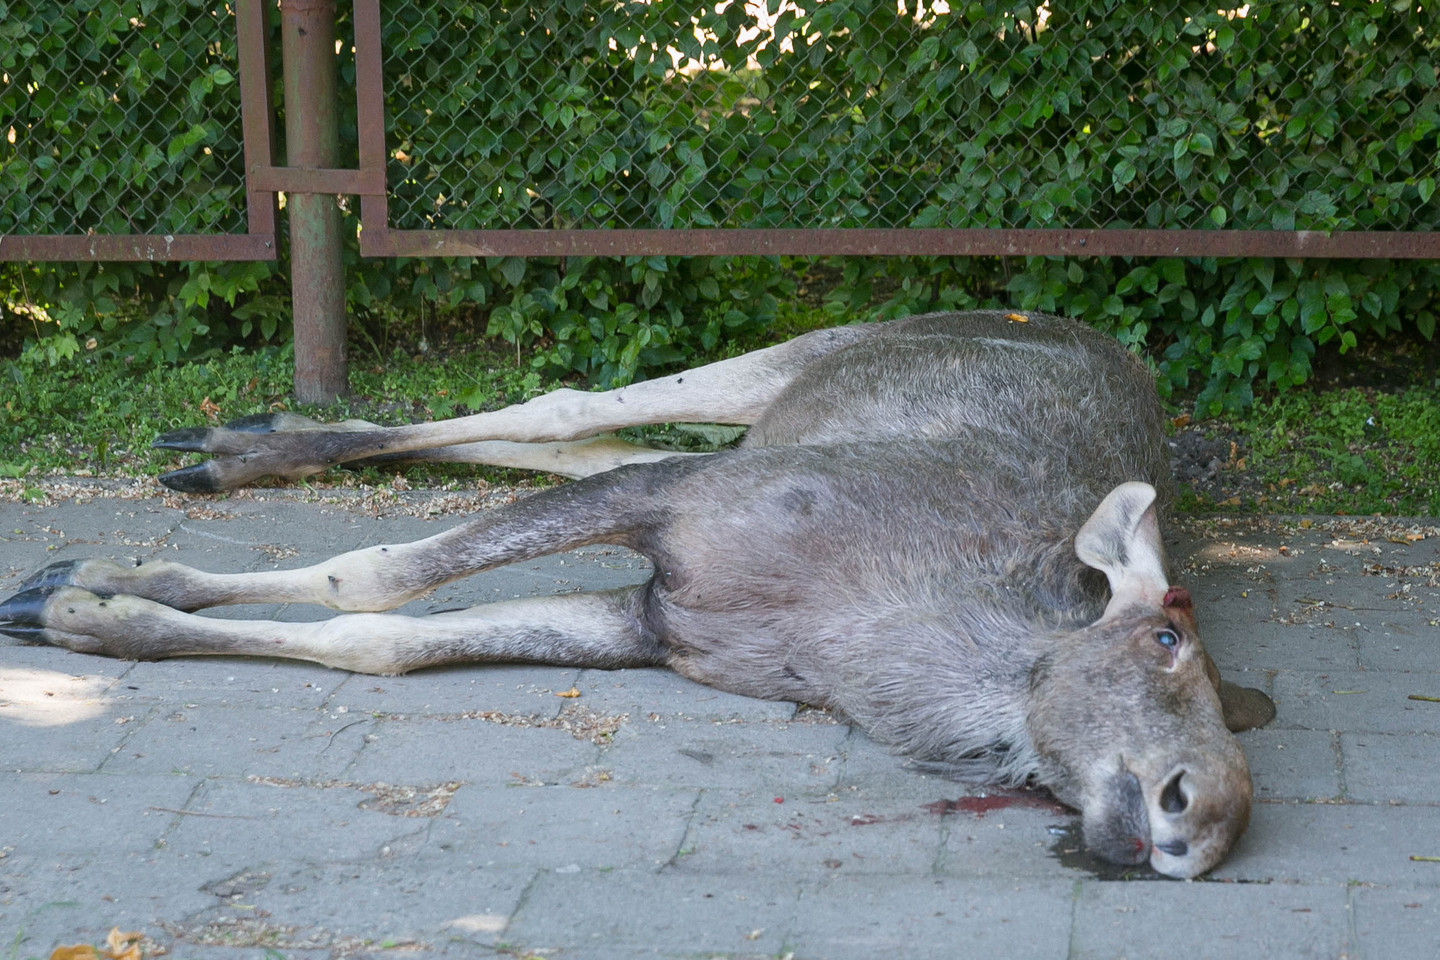 Jaunas briedis neišgyveno. Vilniuje neatsirado gamtos apsaugos specialistų, kurie reaguotų į pranešimą ir būtų galėję išgelbėti gyvūną.<br>T.Bauro nuotr.